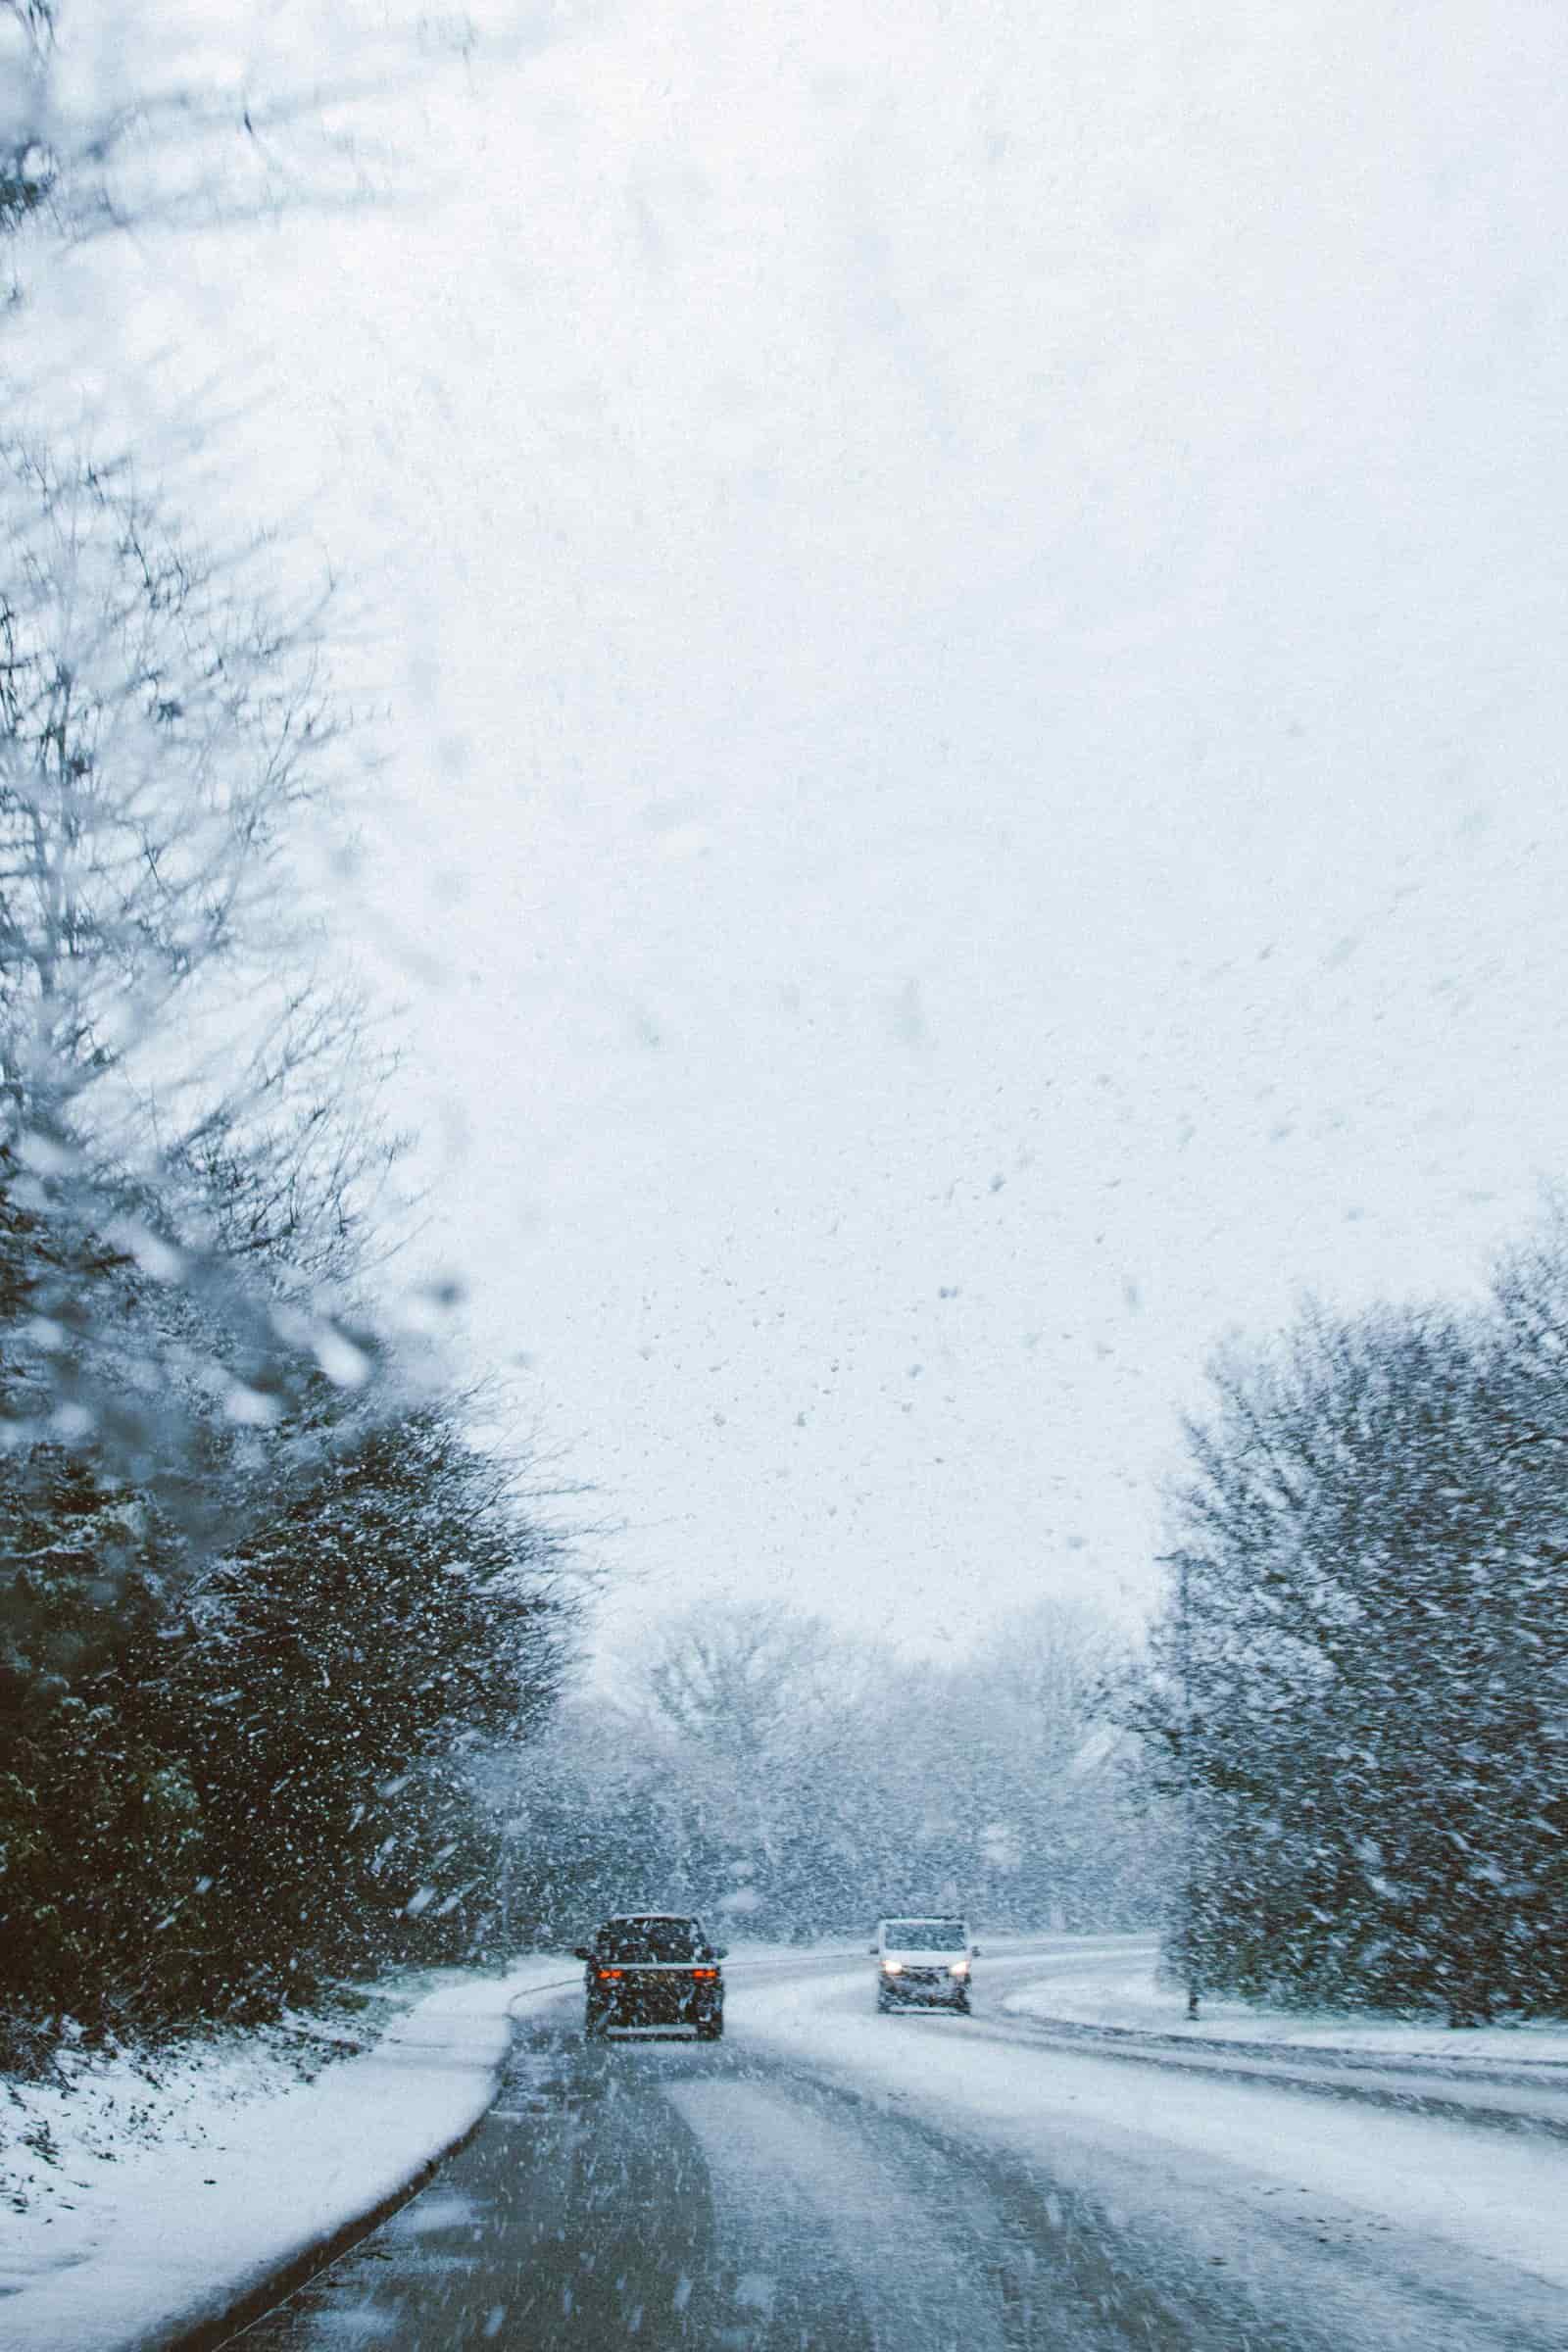 Des voitures sur la route pendant une tempête de neige